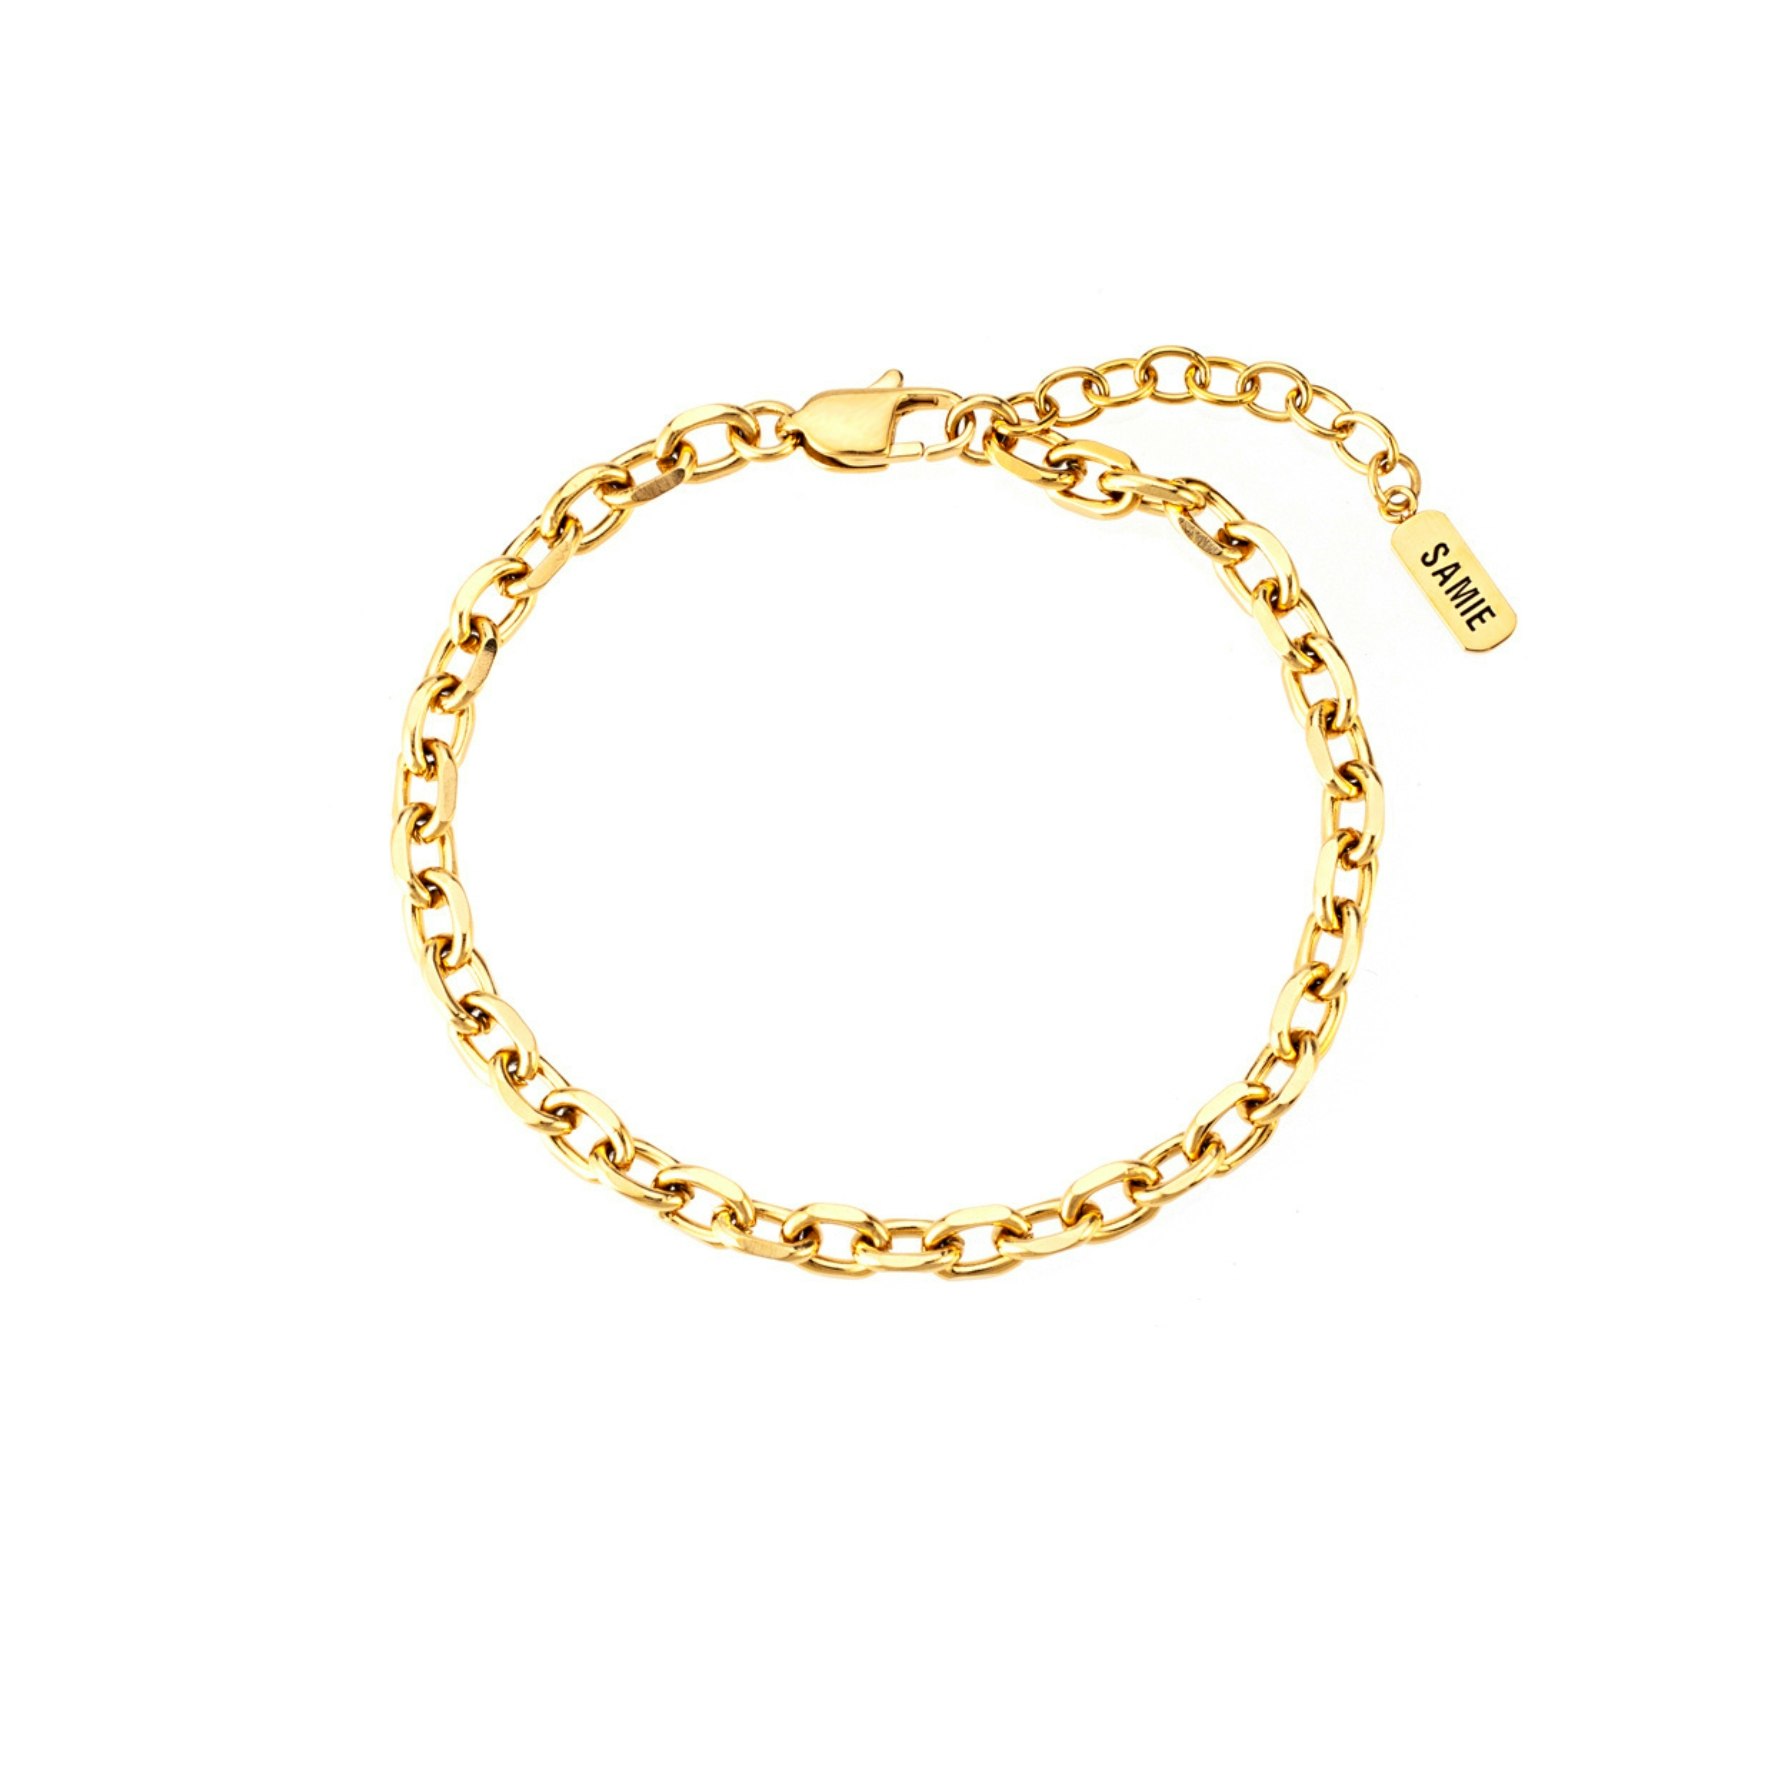 Anker Bracelet von SAMIE in Vergoldetes Edelstahl